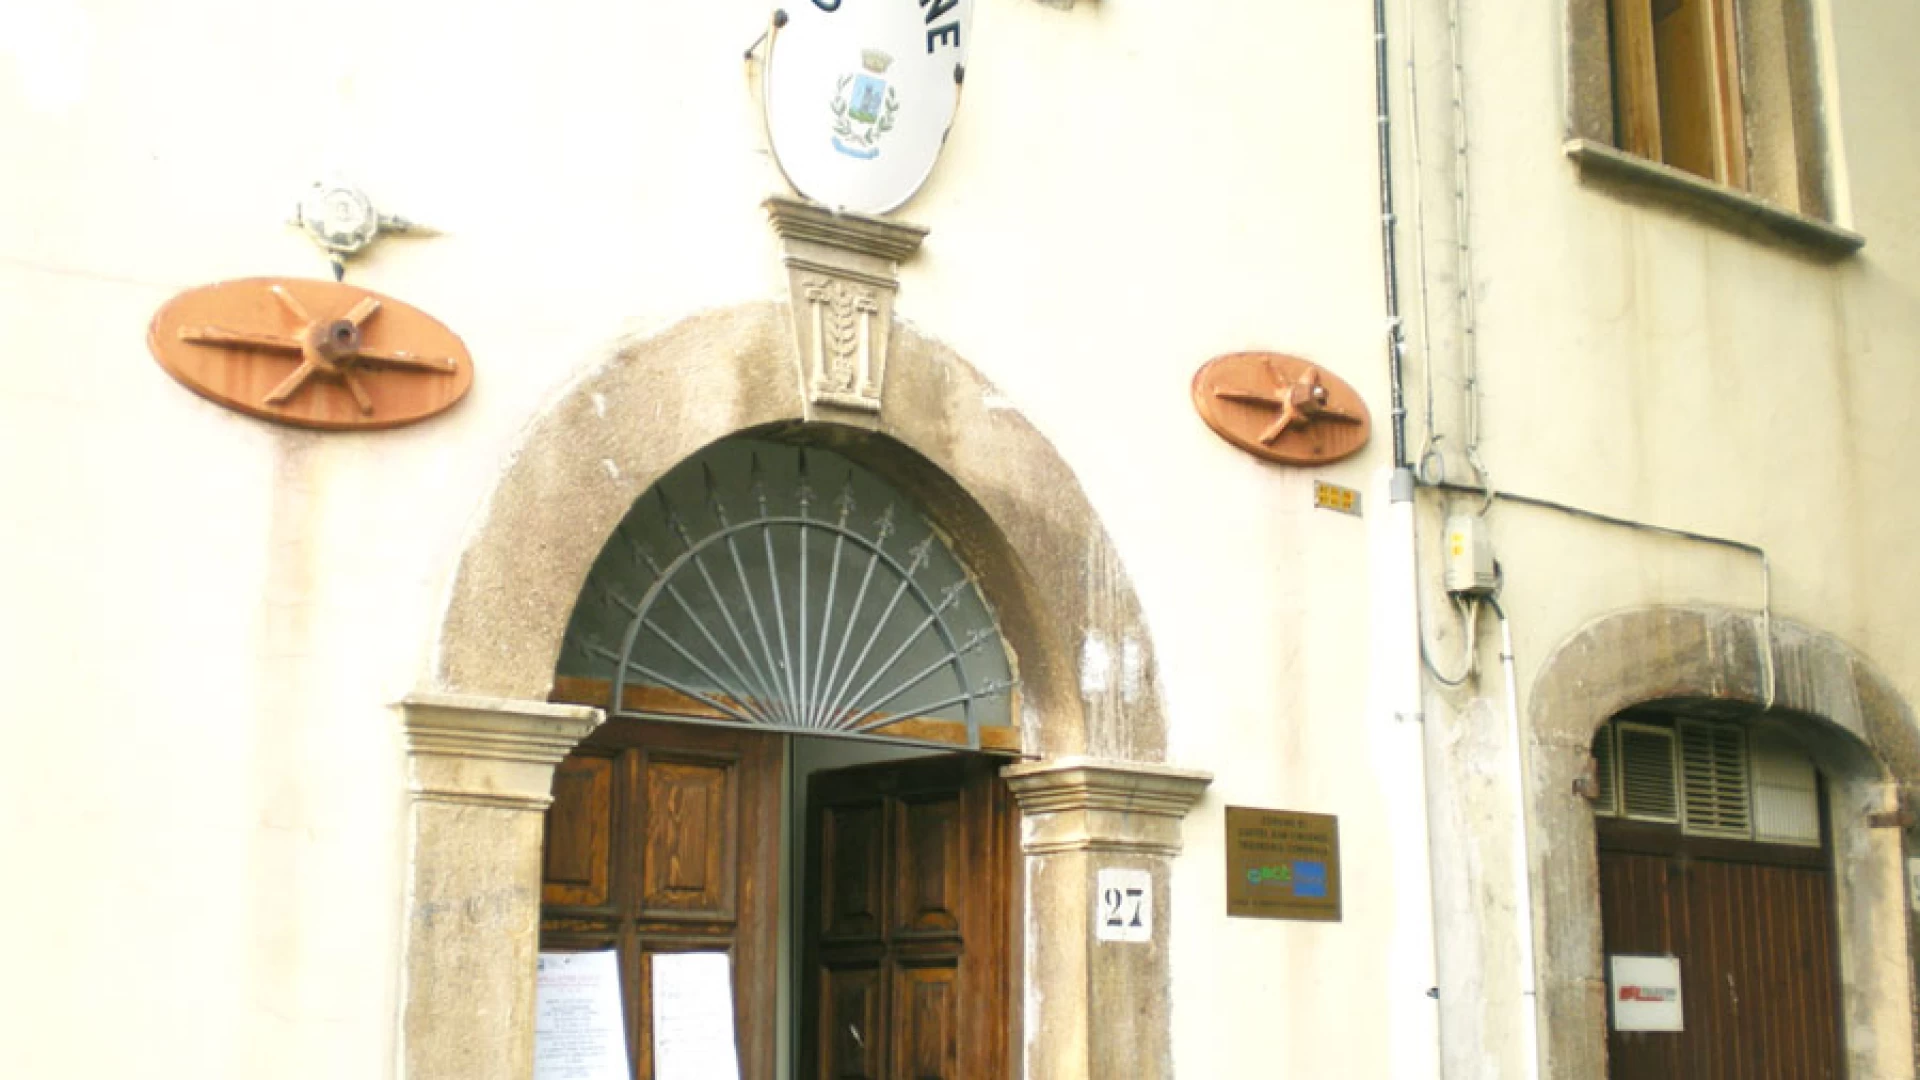 Castel San Vincenzo: Tari il comune non pubblica le tariffe applicare sul sito del MEF. Il gruppo di minoranza impugna il provvedimento e diffida l’ente.